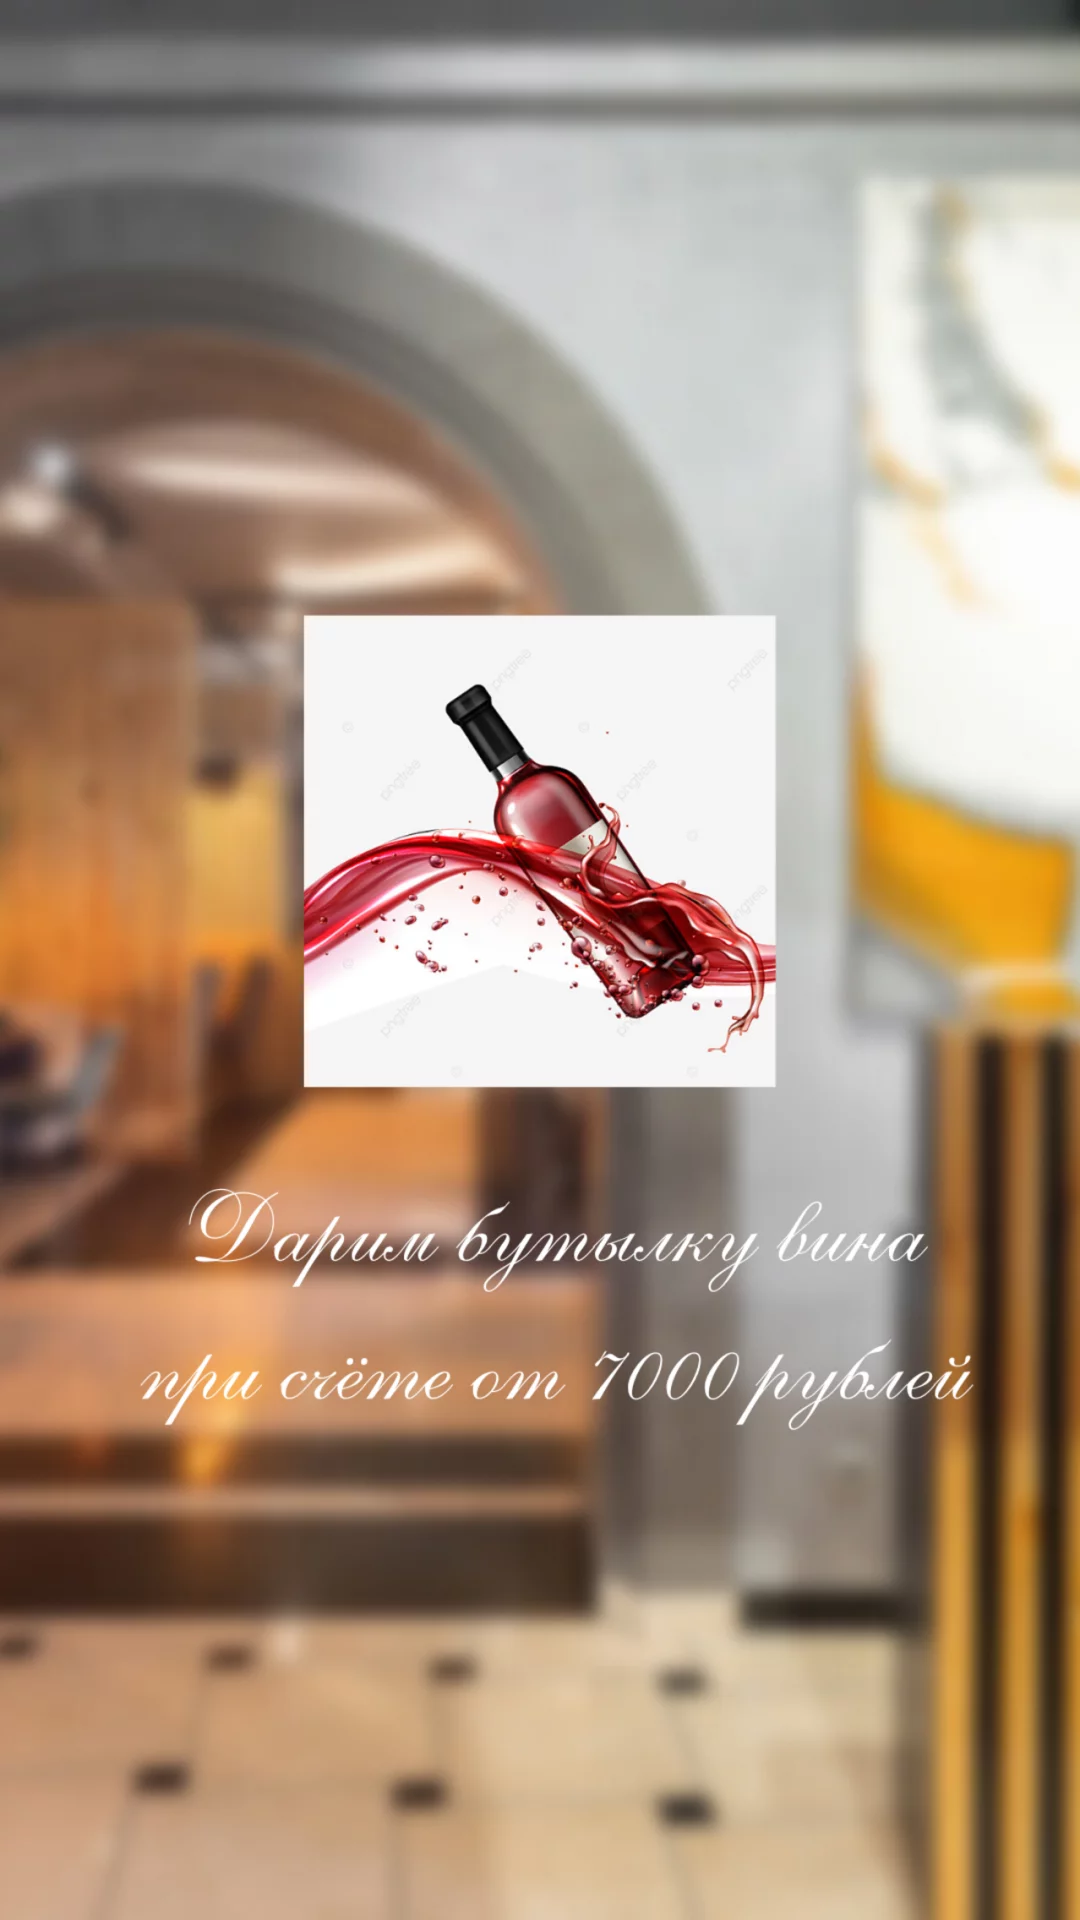 Дарим бутылку вина при счете от 7.000 рублей